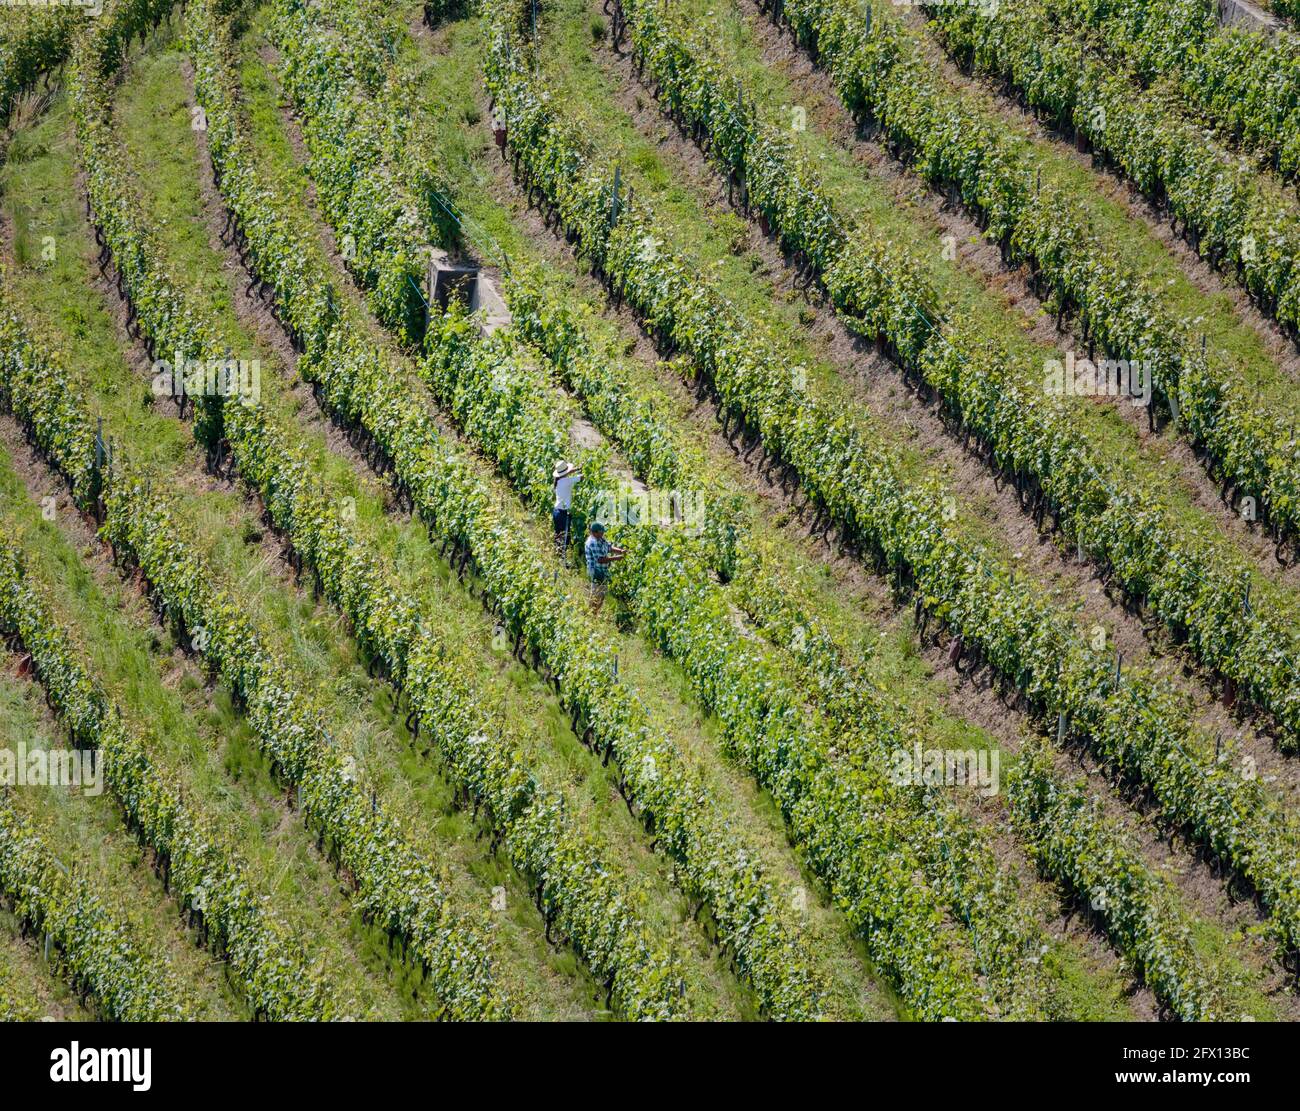 Workers tending vines in vineyard near Montreux, Vaud Canton, Switzerland. Stock Photo